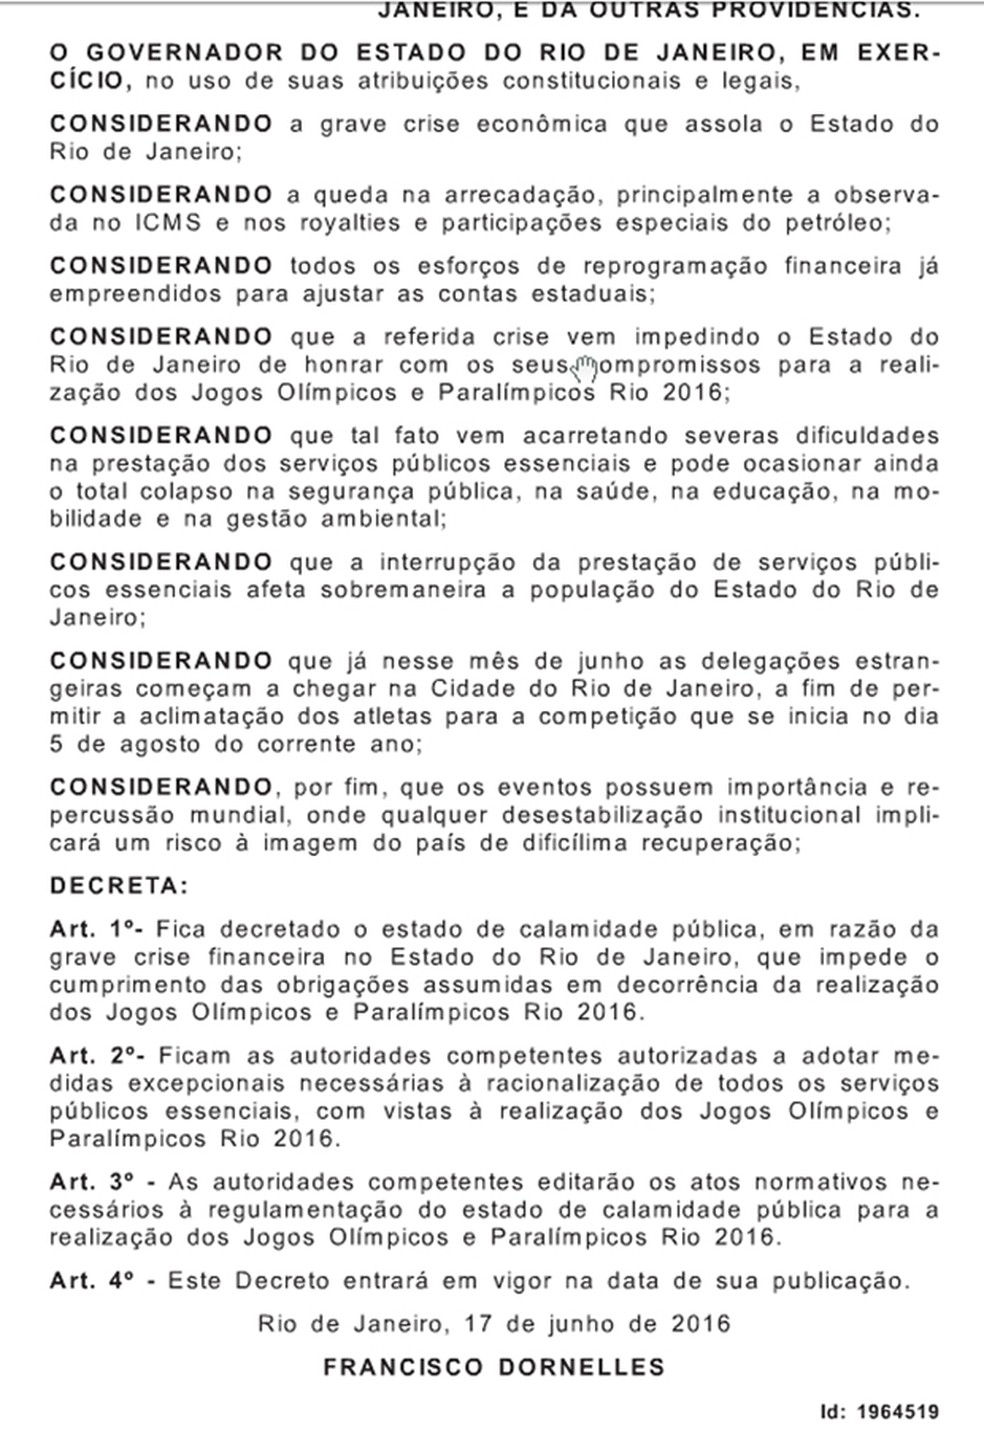 Decreto foi publicado no dia 17 de junho de 2016 (Foto: Reprodução/Diário Oficial do RJ)